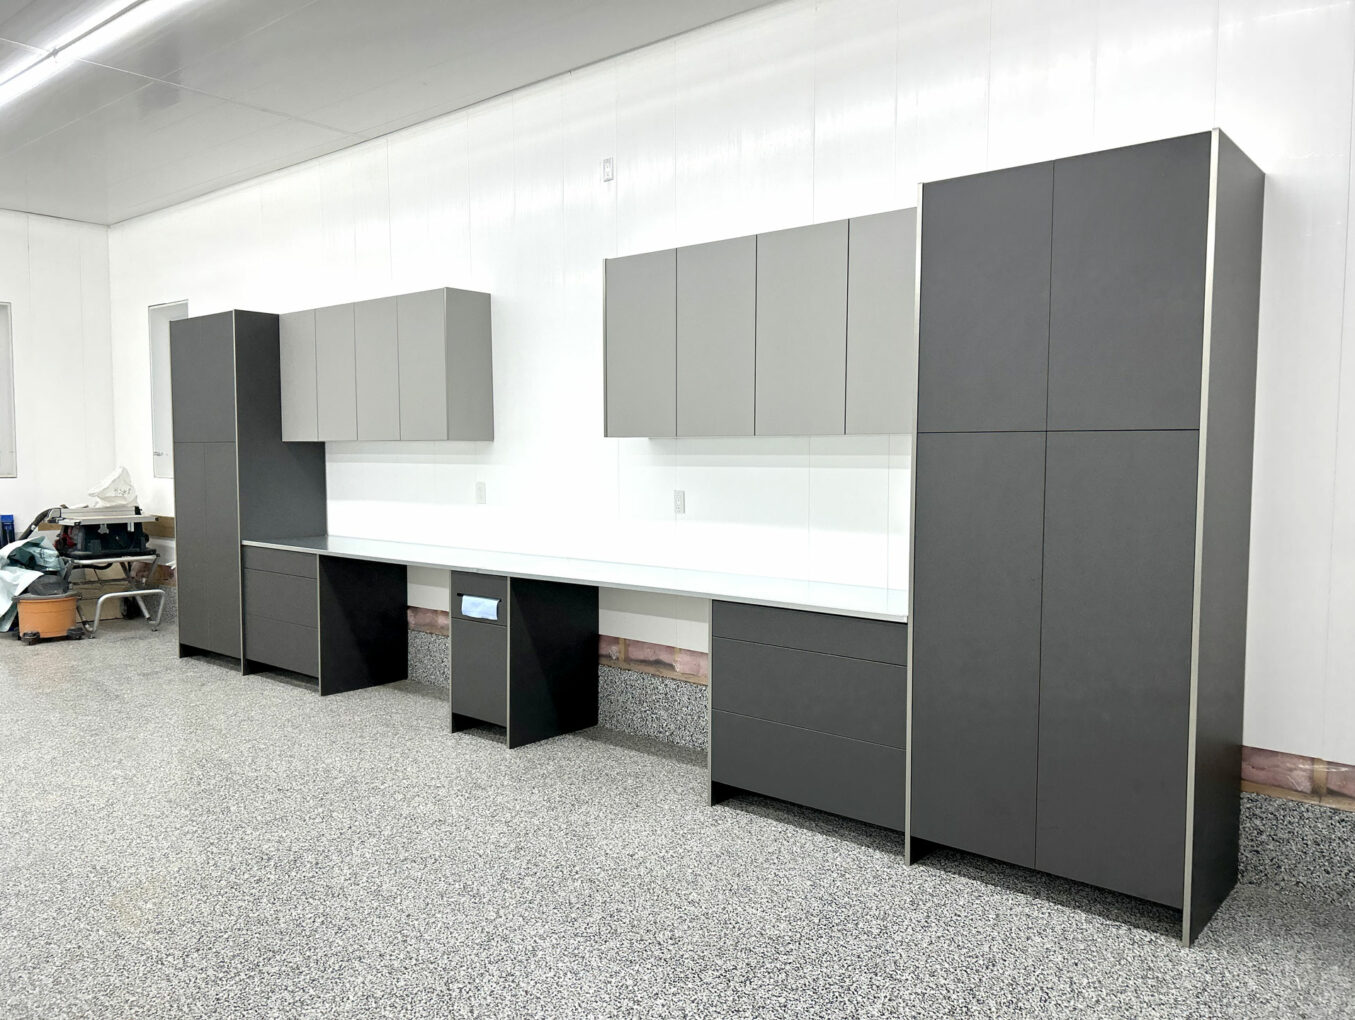 The Modern Garage Redefined: SMRT Cabinets